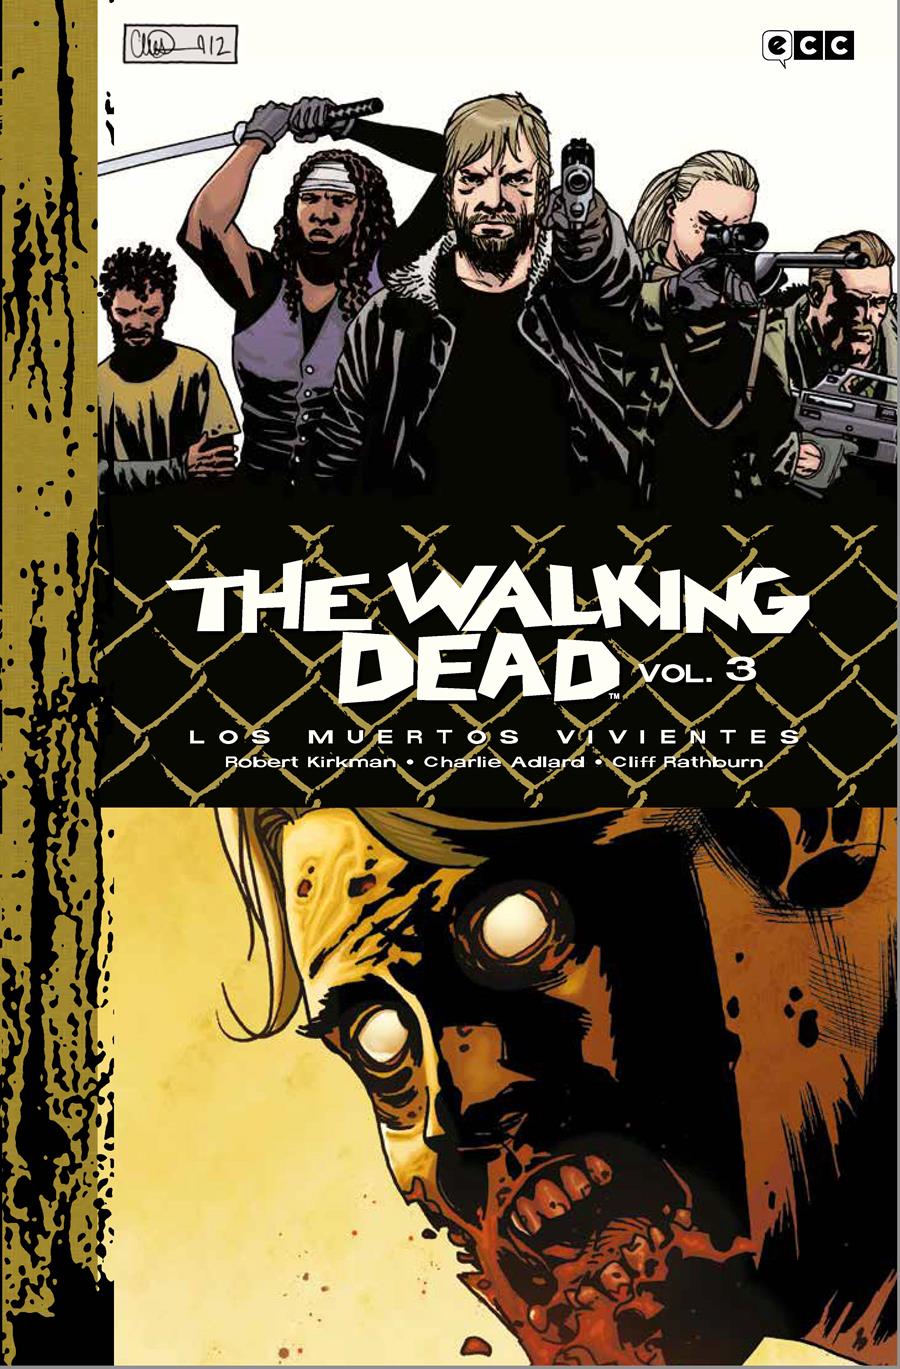 The Walking Dead (Los muertos vivientes) vol. 3 de 9 (Edición Deluxe) | N0323-ECC47 | Charlie Adlard / Robert Kirkman | Terra de Còmic - Tu tienda de cómics online especializada en cómics, manga y merchandising